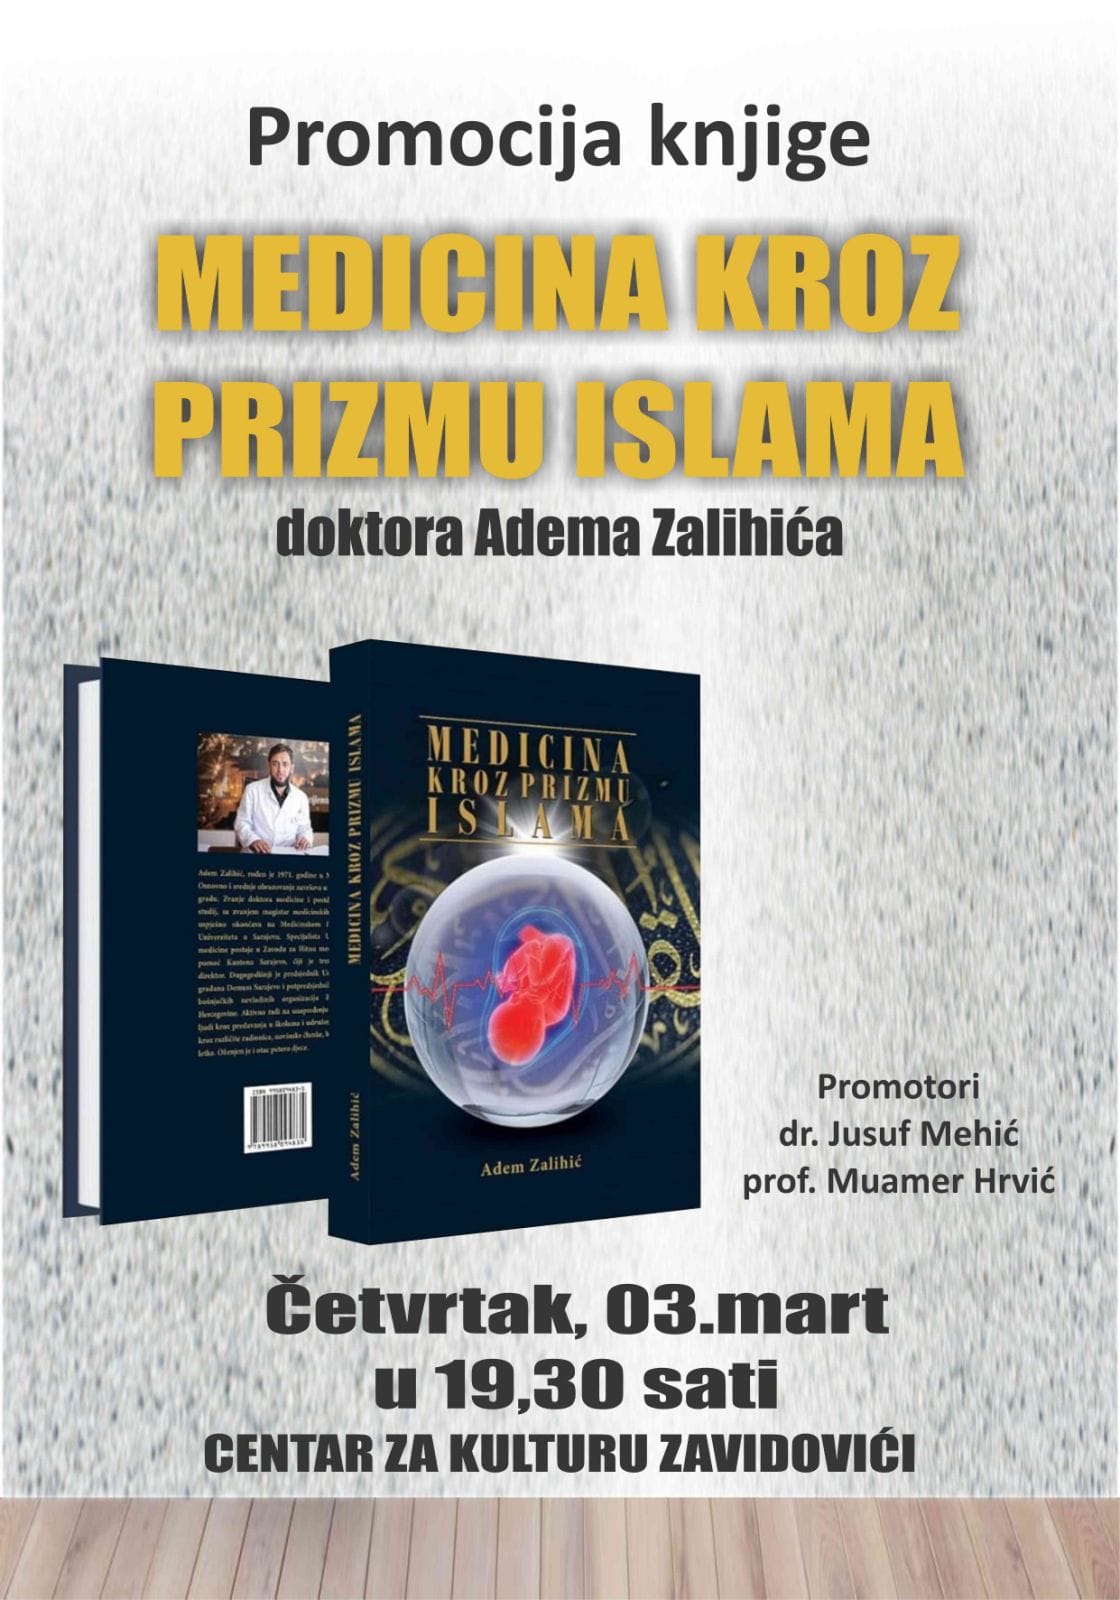 Promocija knjige “Medicina kroz prizmu islama” doktora Adema Zalihića